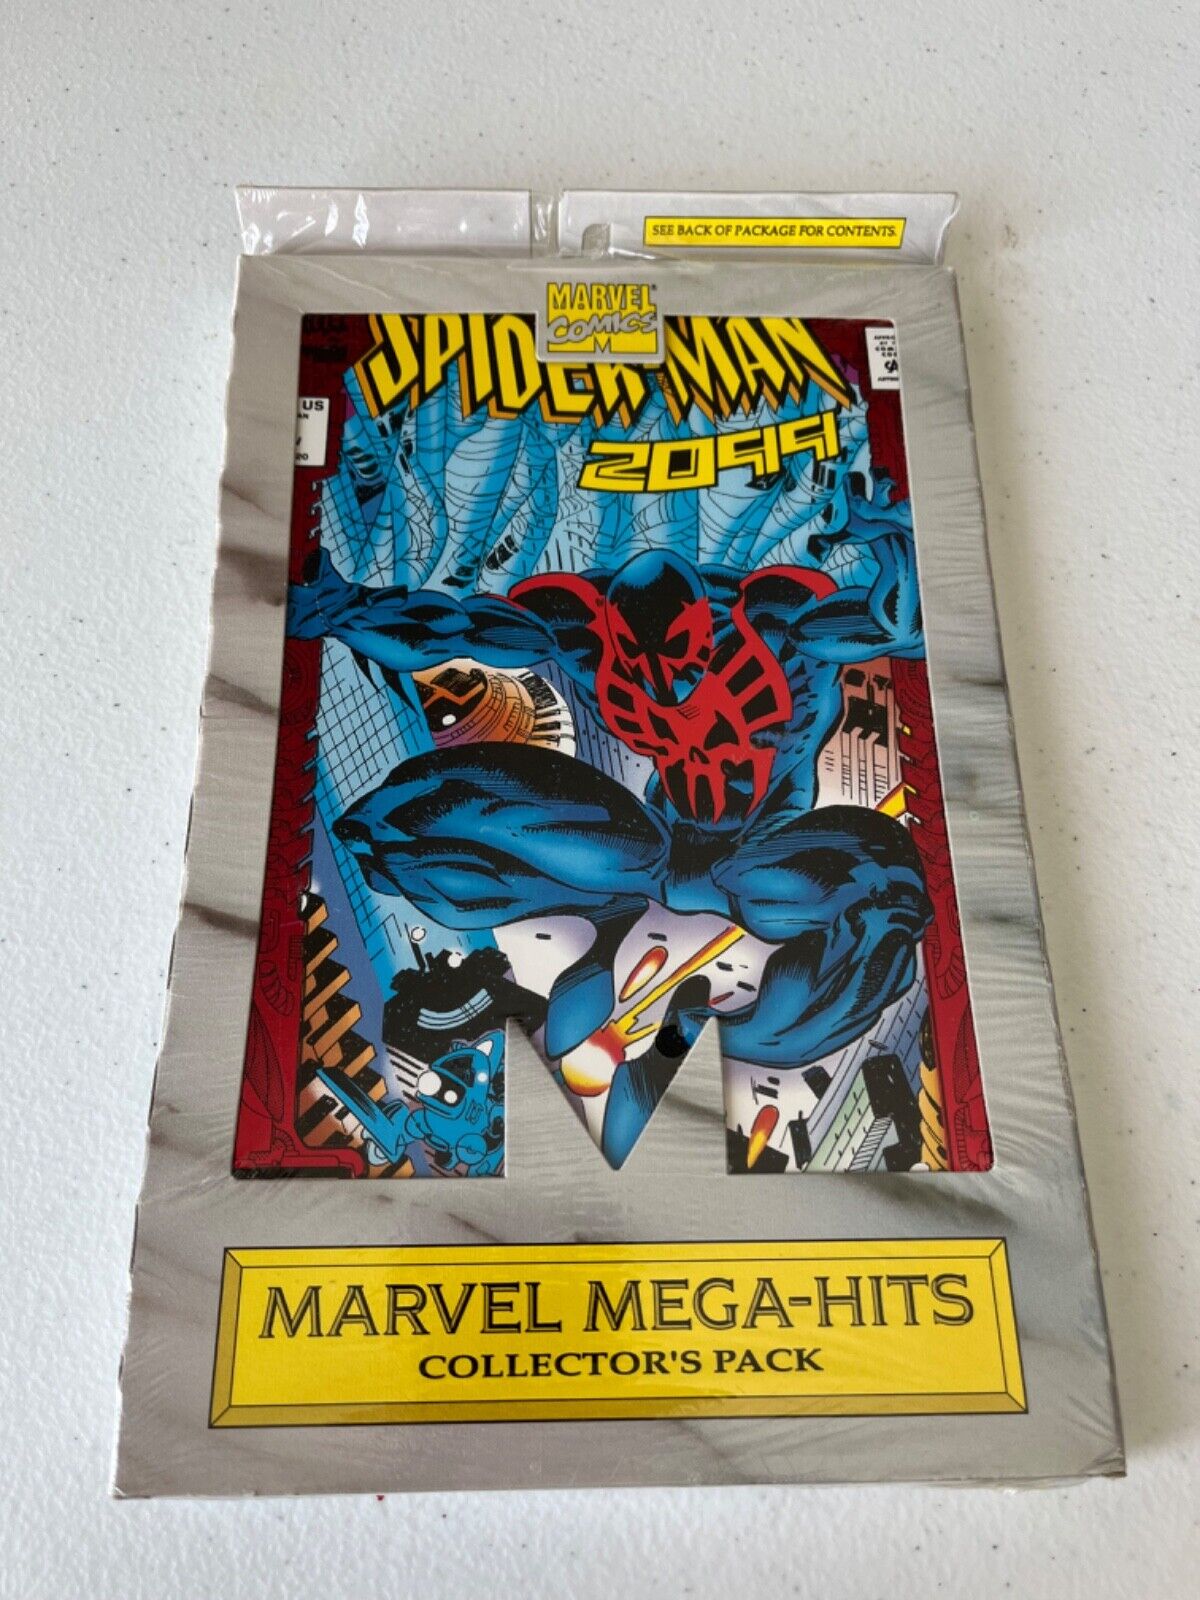 Marvel Mega-Hits Collector Pack 1993 SEALED SPIDER-MAN 2099 #1